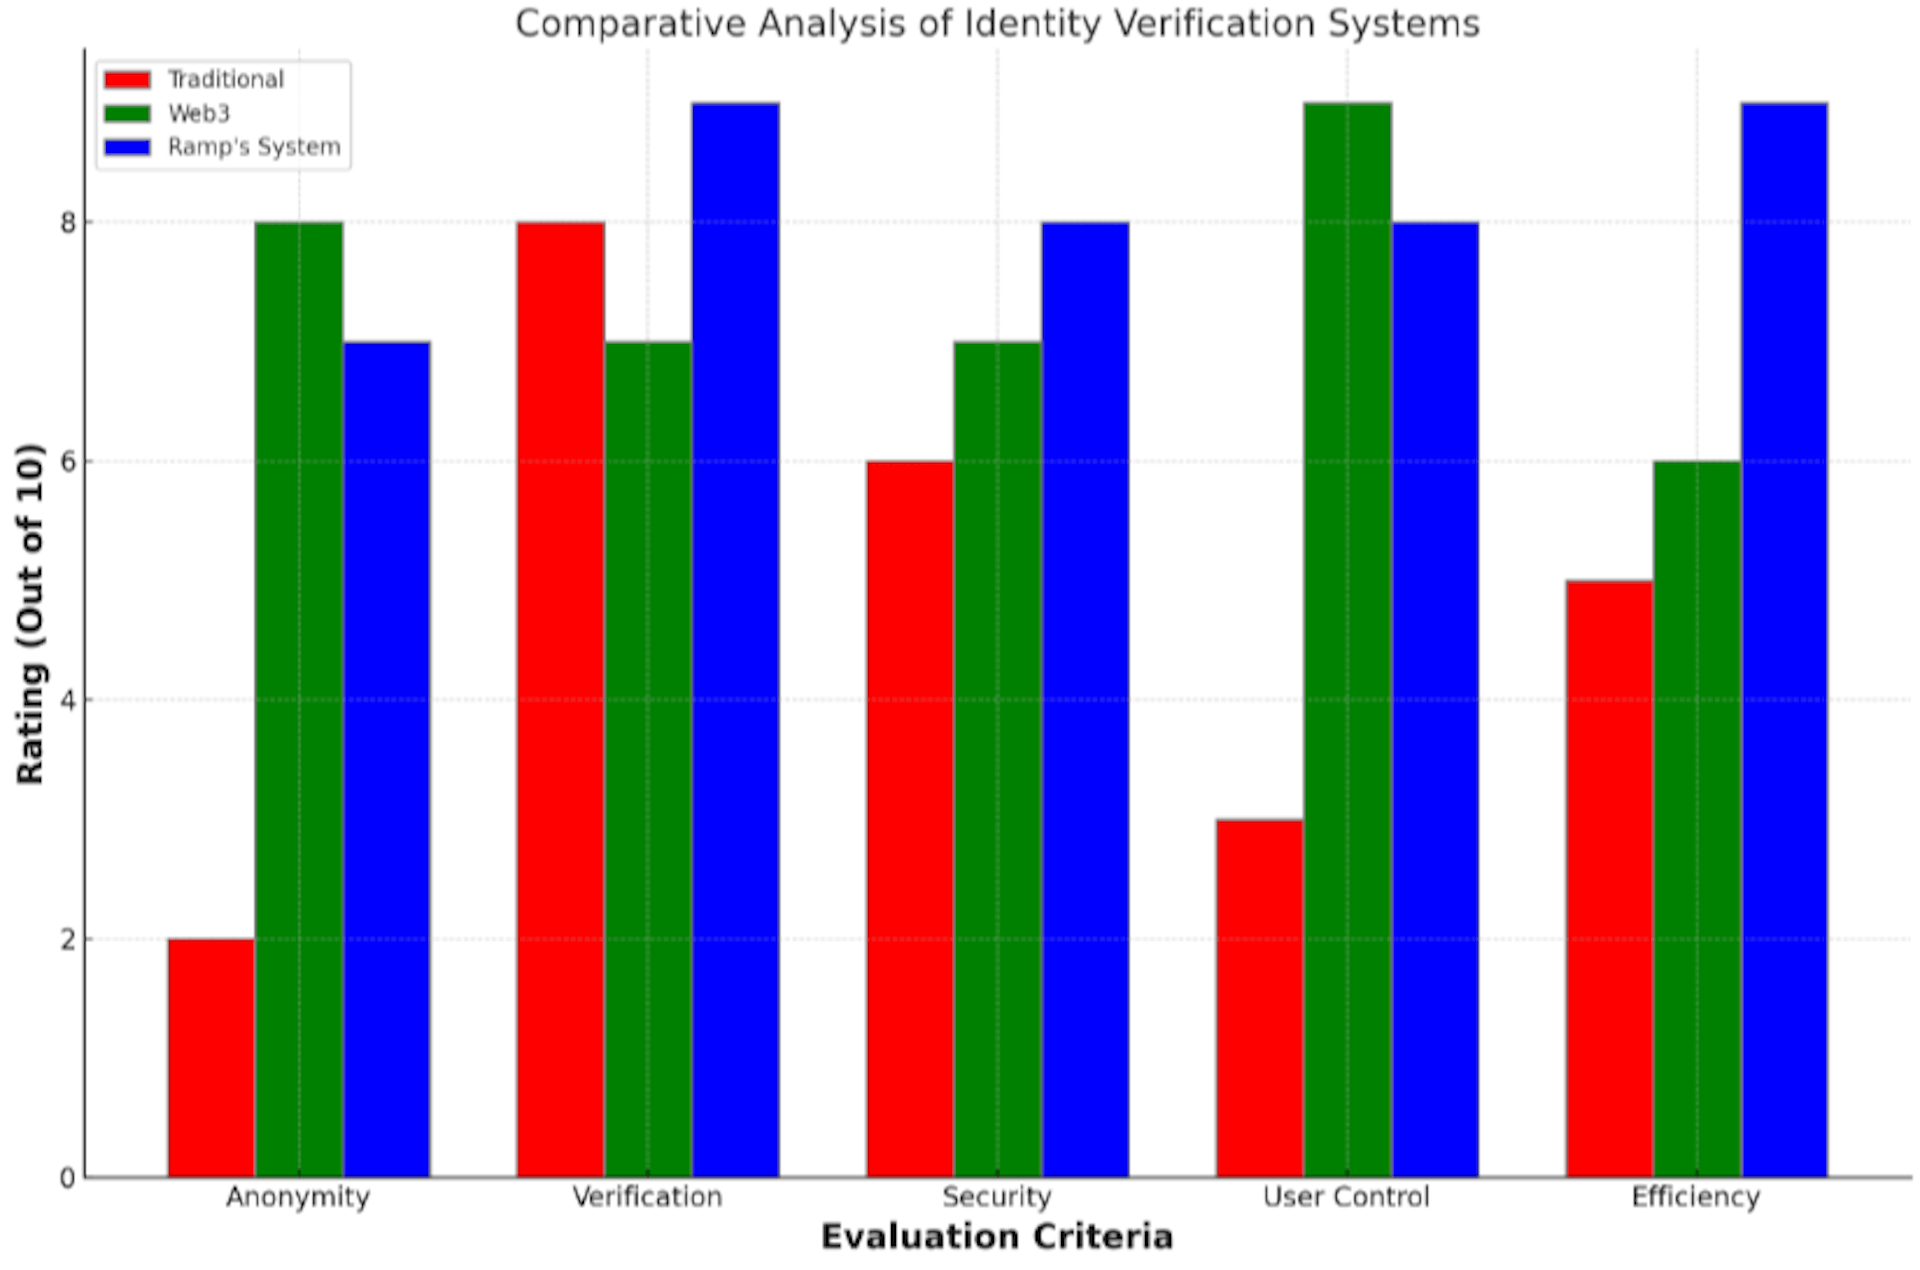 Análisis comparativo de los sistemas de verificación de identidad en cinco dimensiones críticas: anonimato, verificación, seguridad, control de usuarios y eficiencia.